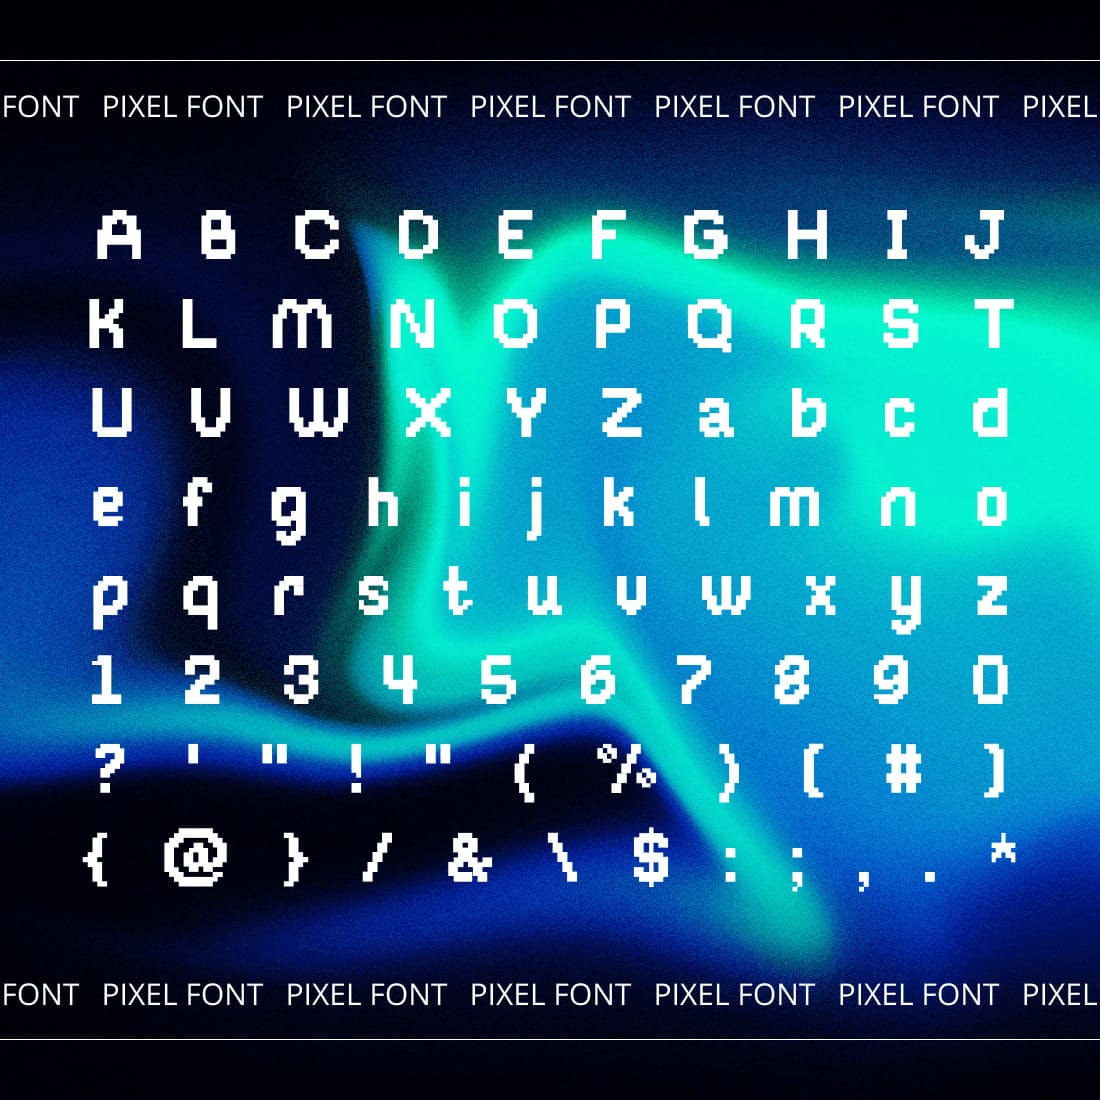 Piffle pixel font preview by MasterBundles.